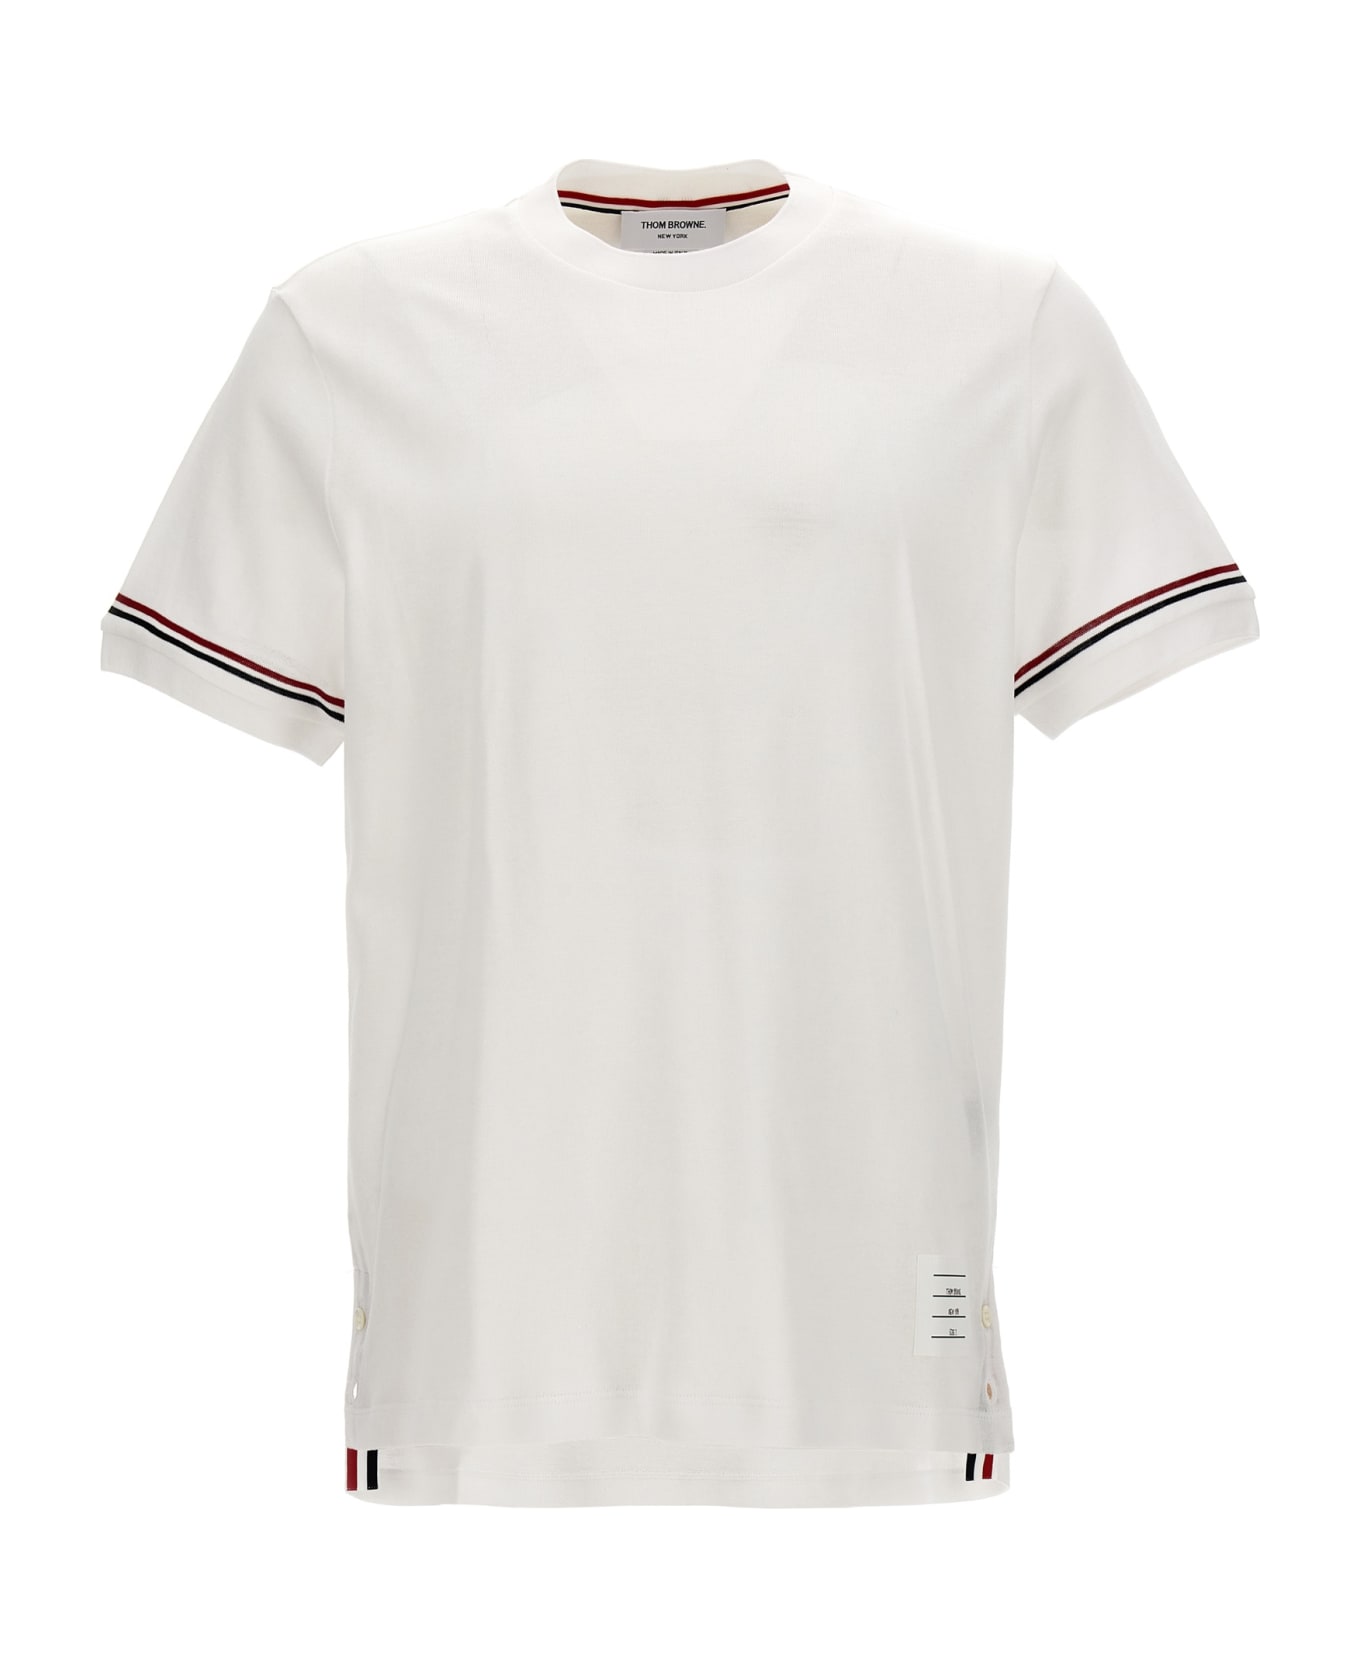 Thom Browne 'rwb' T-shirt - White